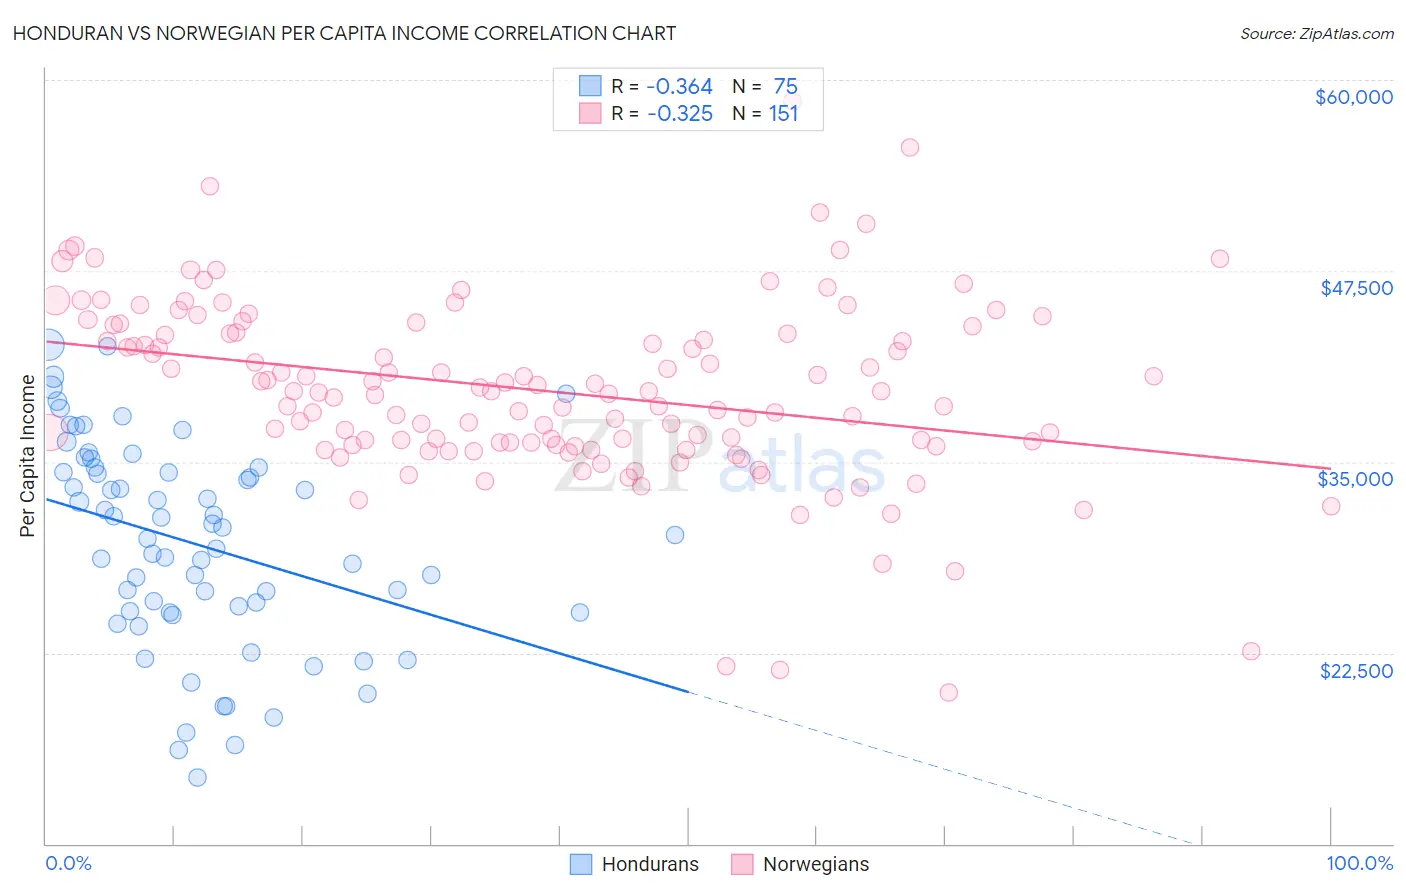 Honduran vs Norwegian Per Capita Income